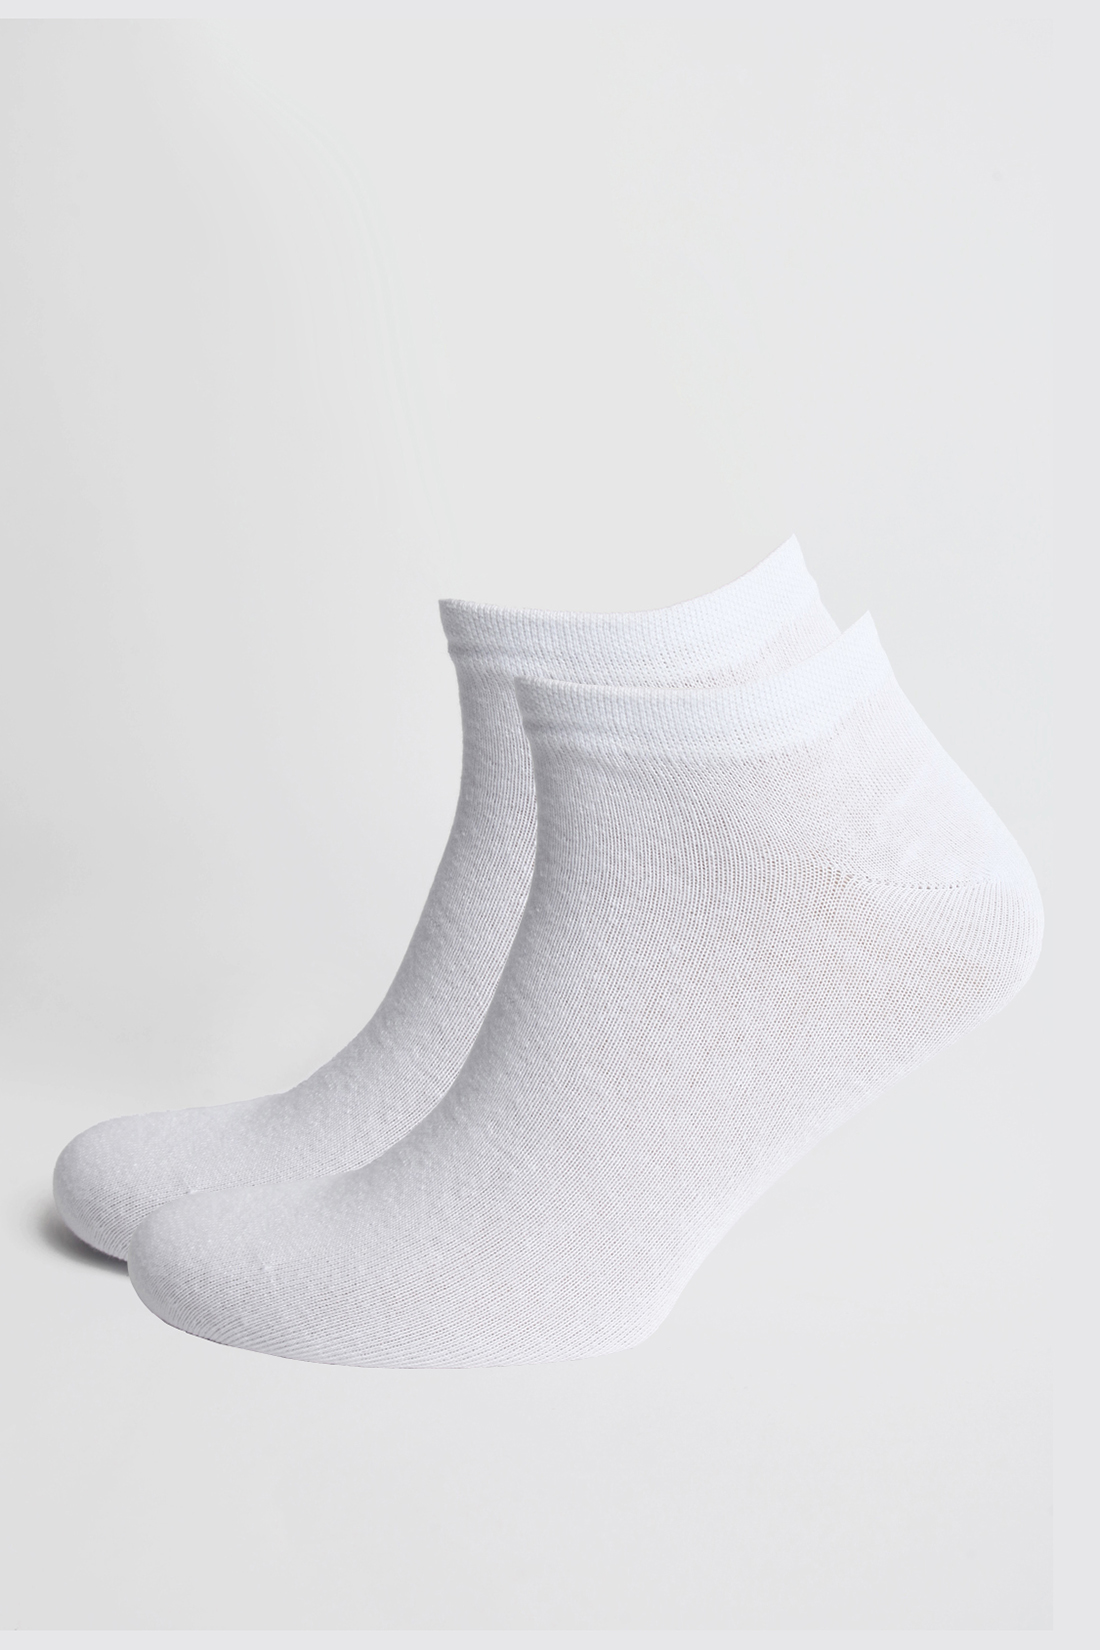 Мужские носки, 2 пары (арт. baon B891106), размер 40/42, цвет белый